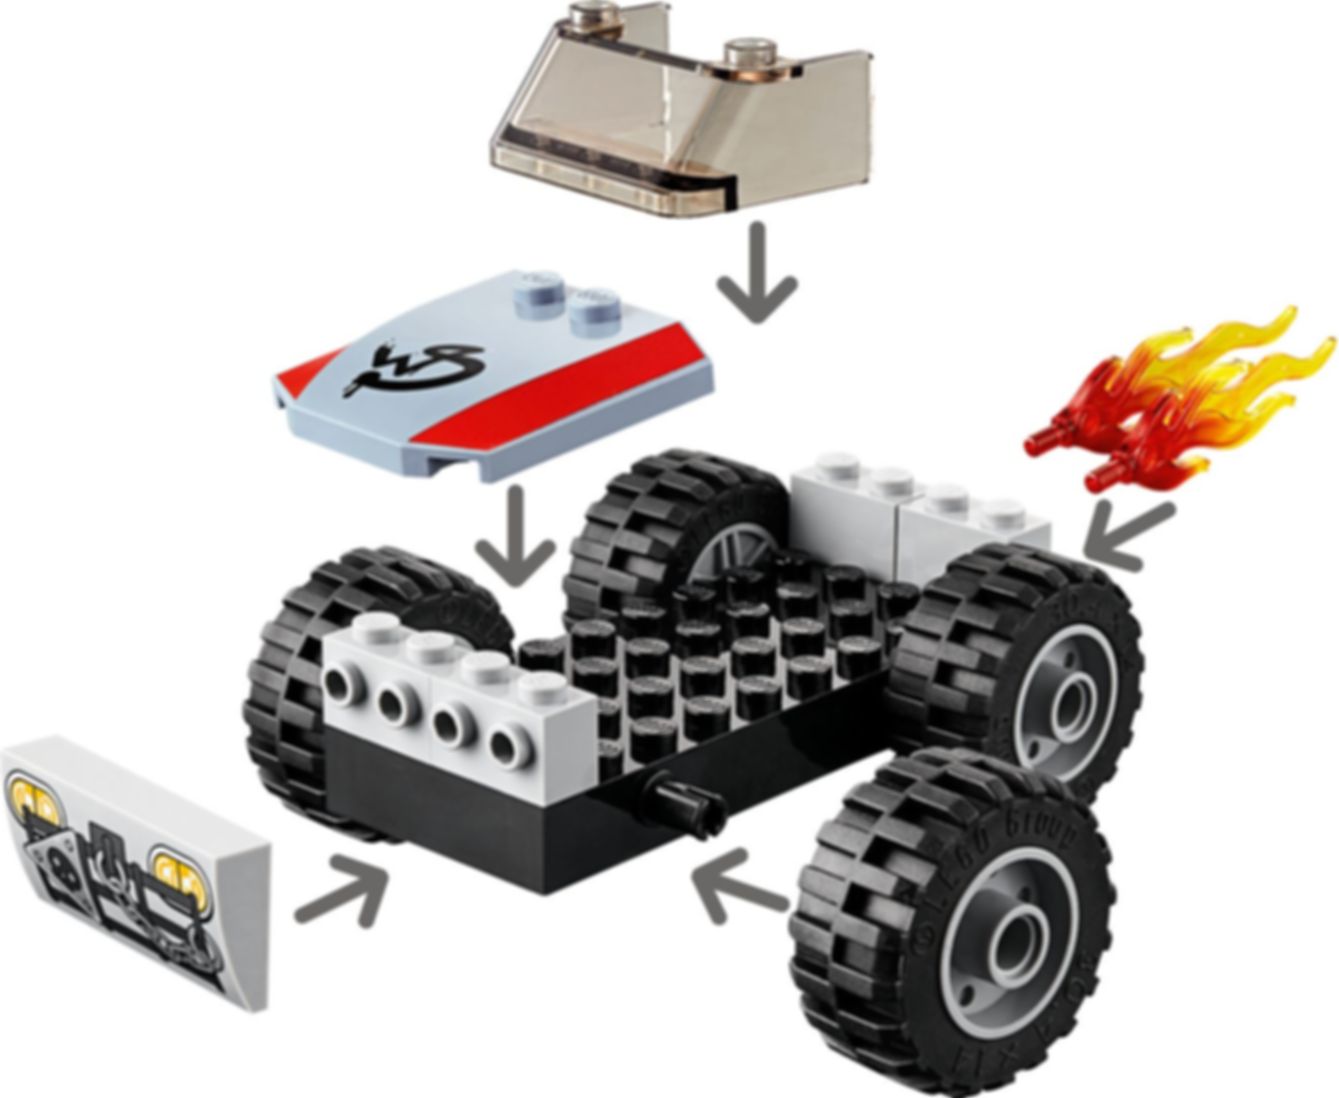 LEGO® Movie Emmets und Bennys Bau- und Reparaturwerkstatt! komponenten